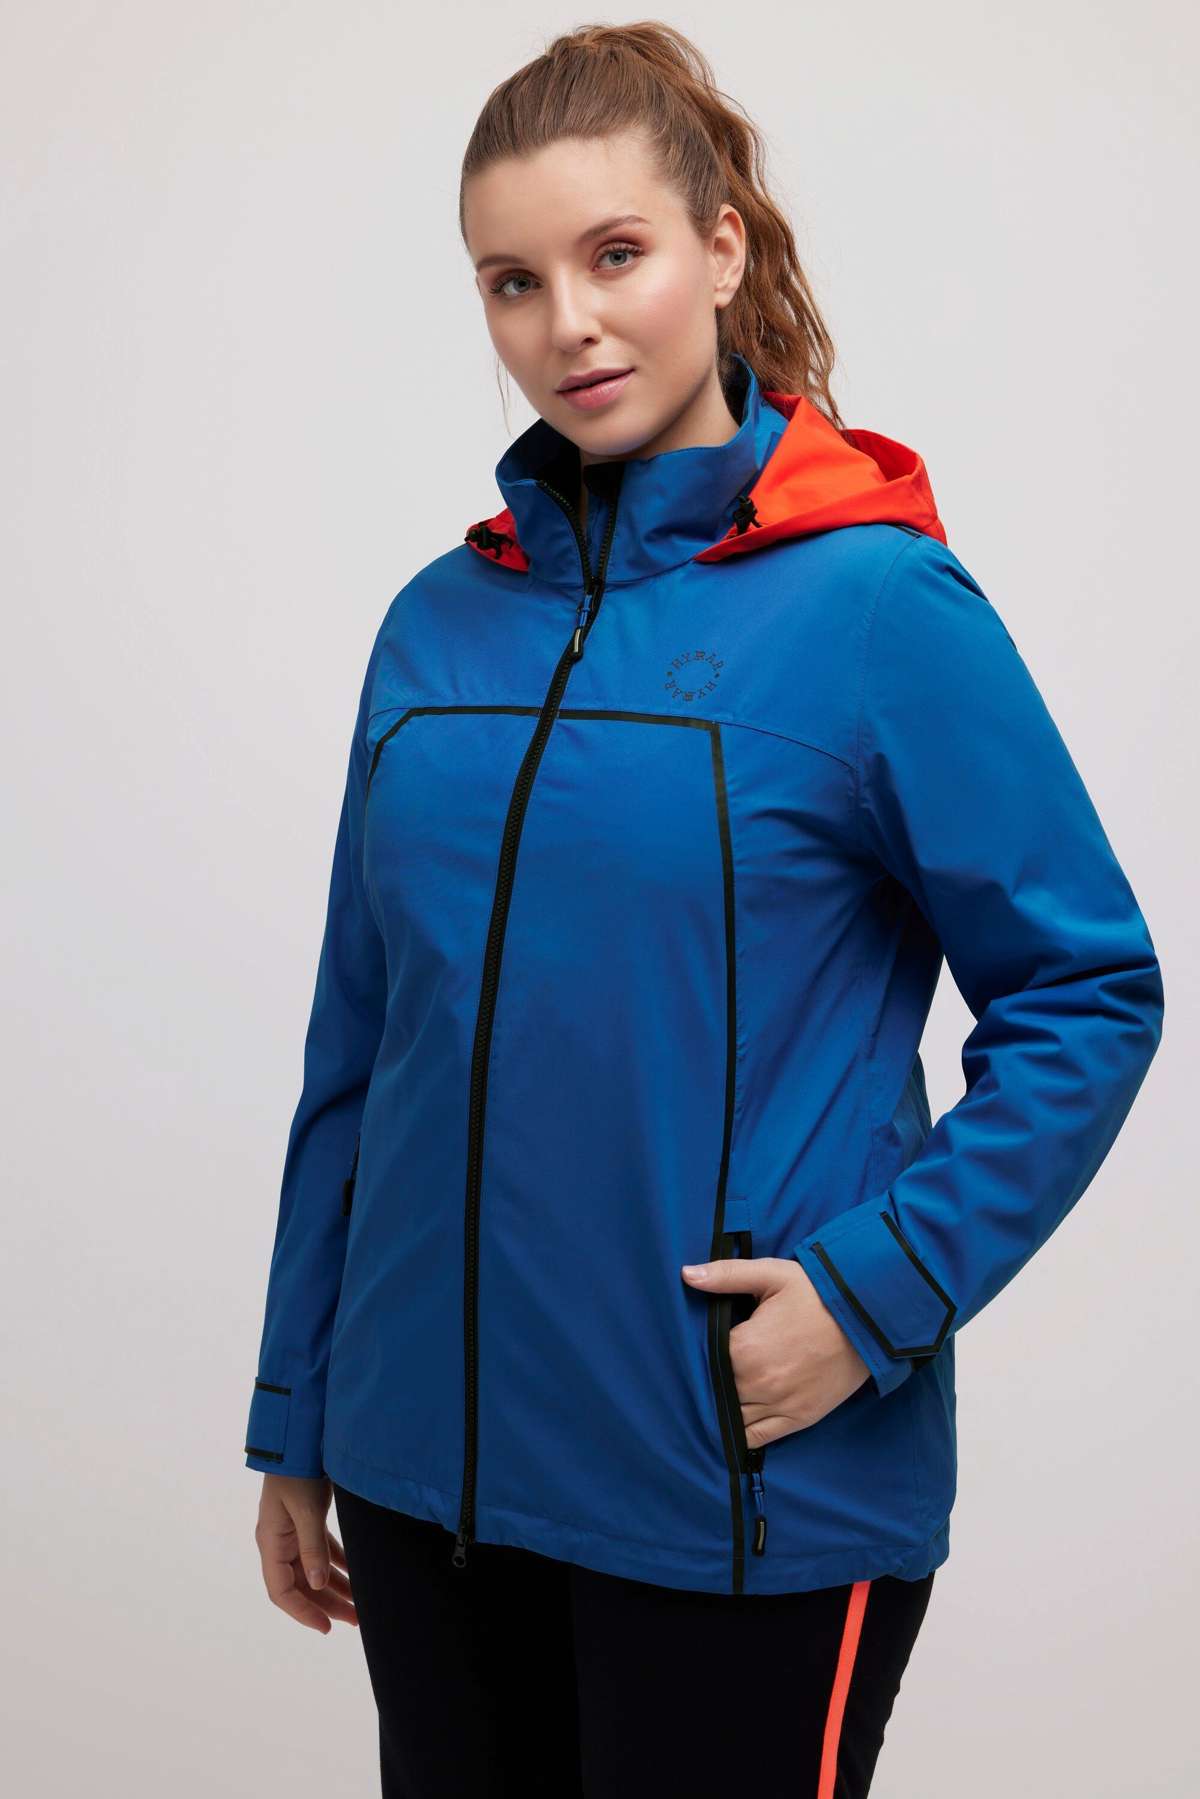 Функциональная куртка для парусного спорта, функциональная куртка с водонепроницаемым капюшоном